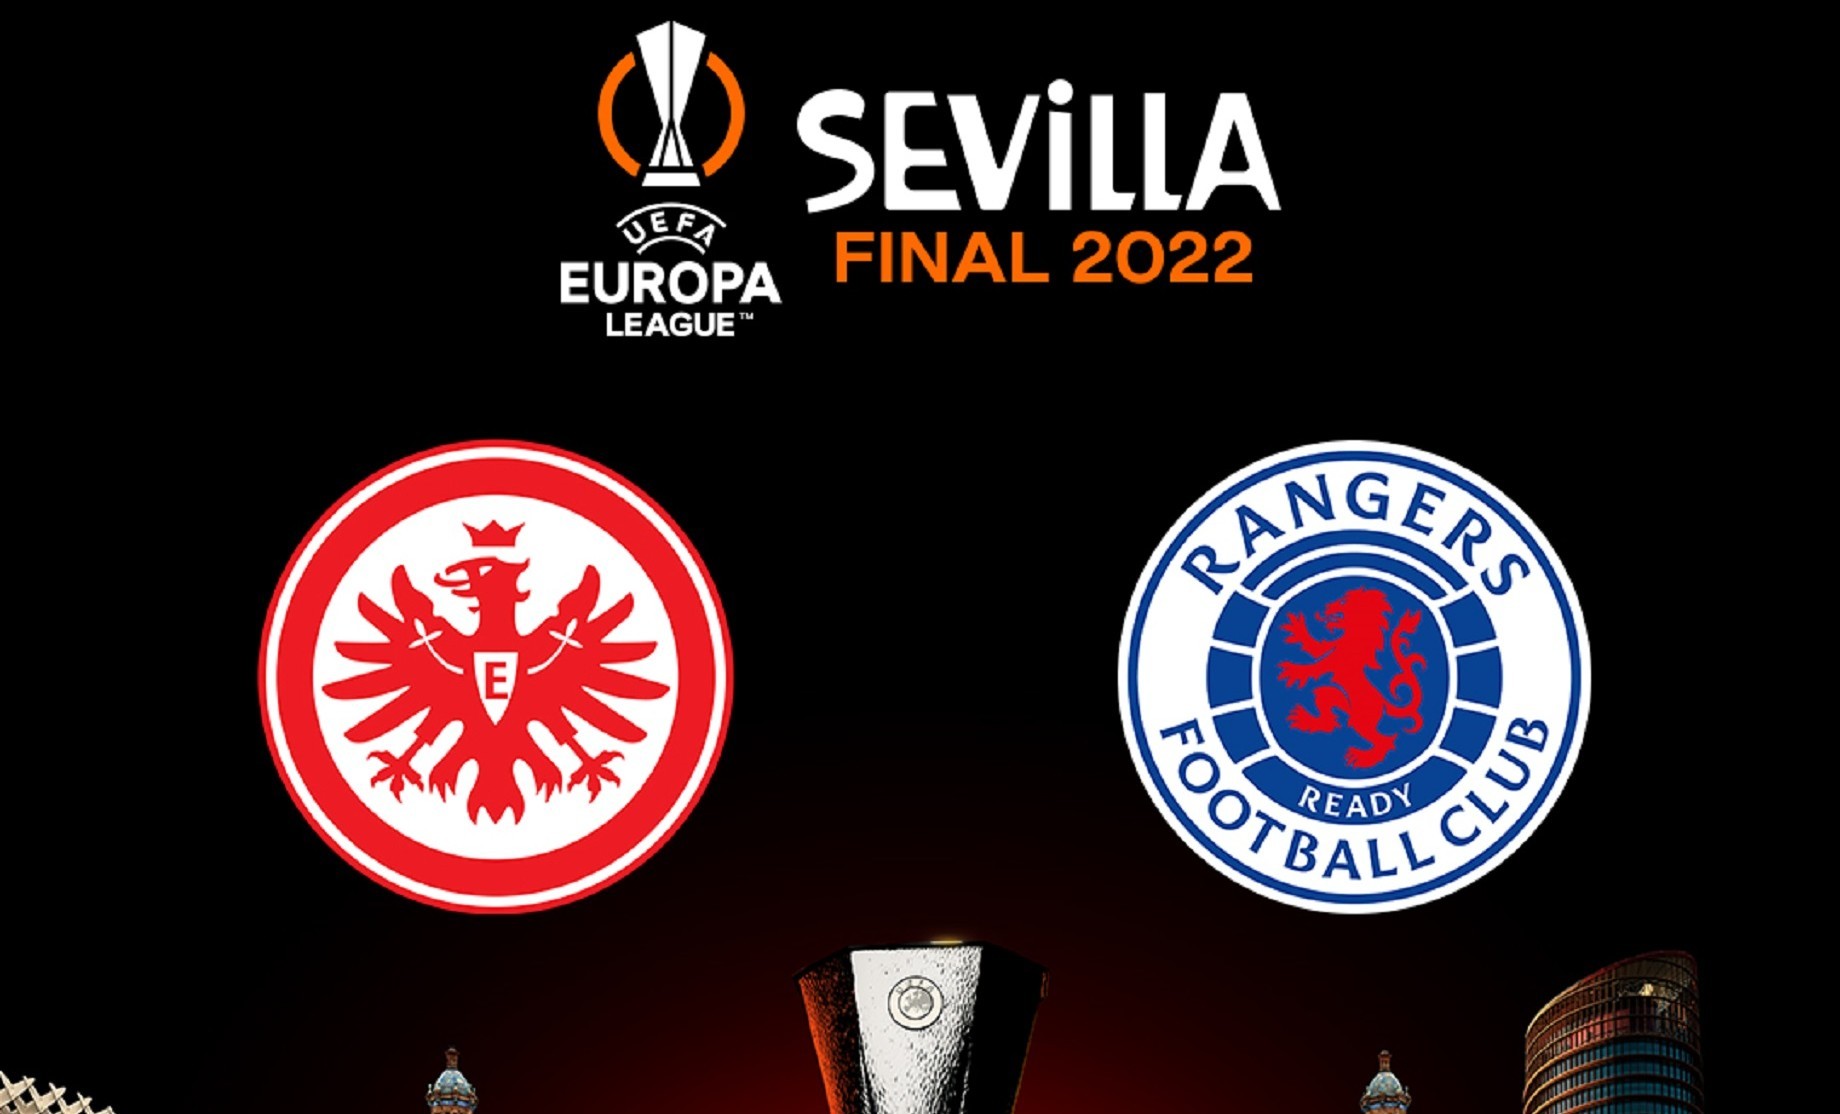 ¿Qué equipos jugarán la final de Europa League 2022